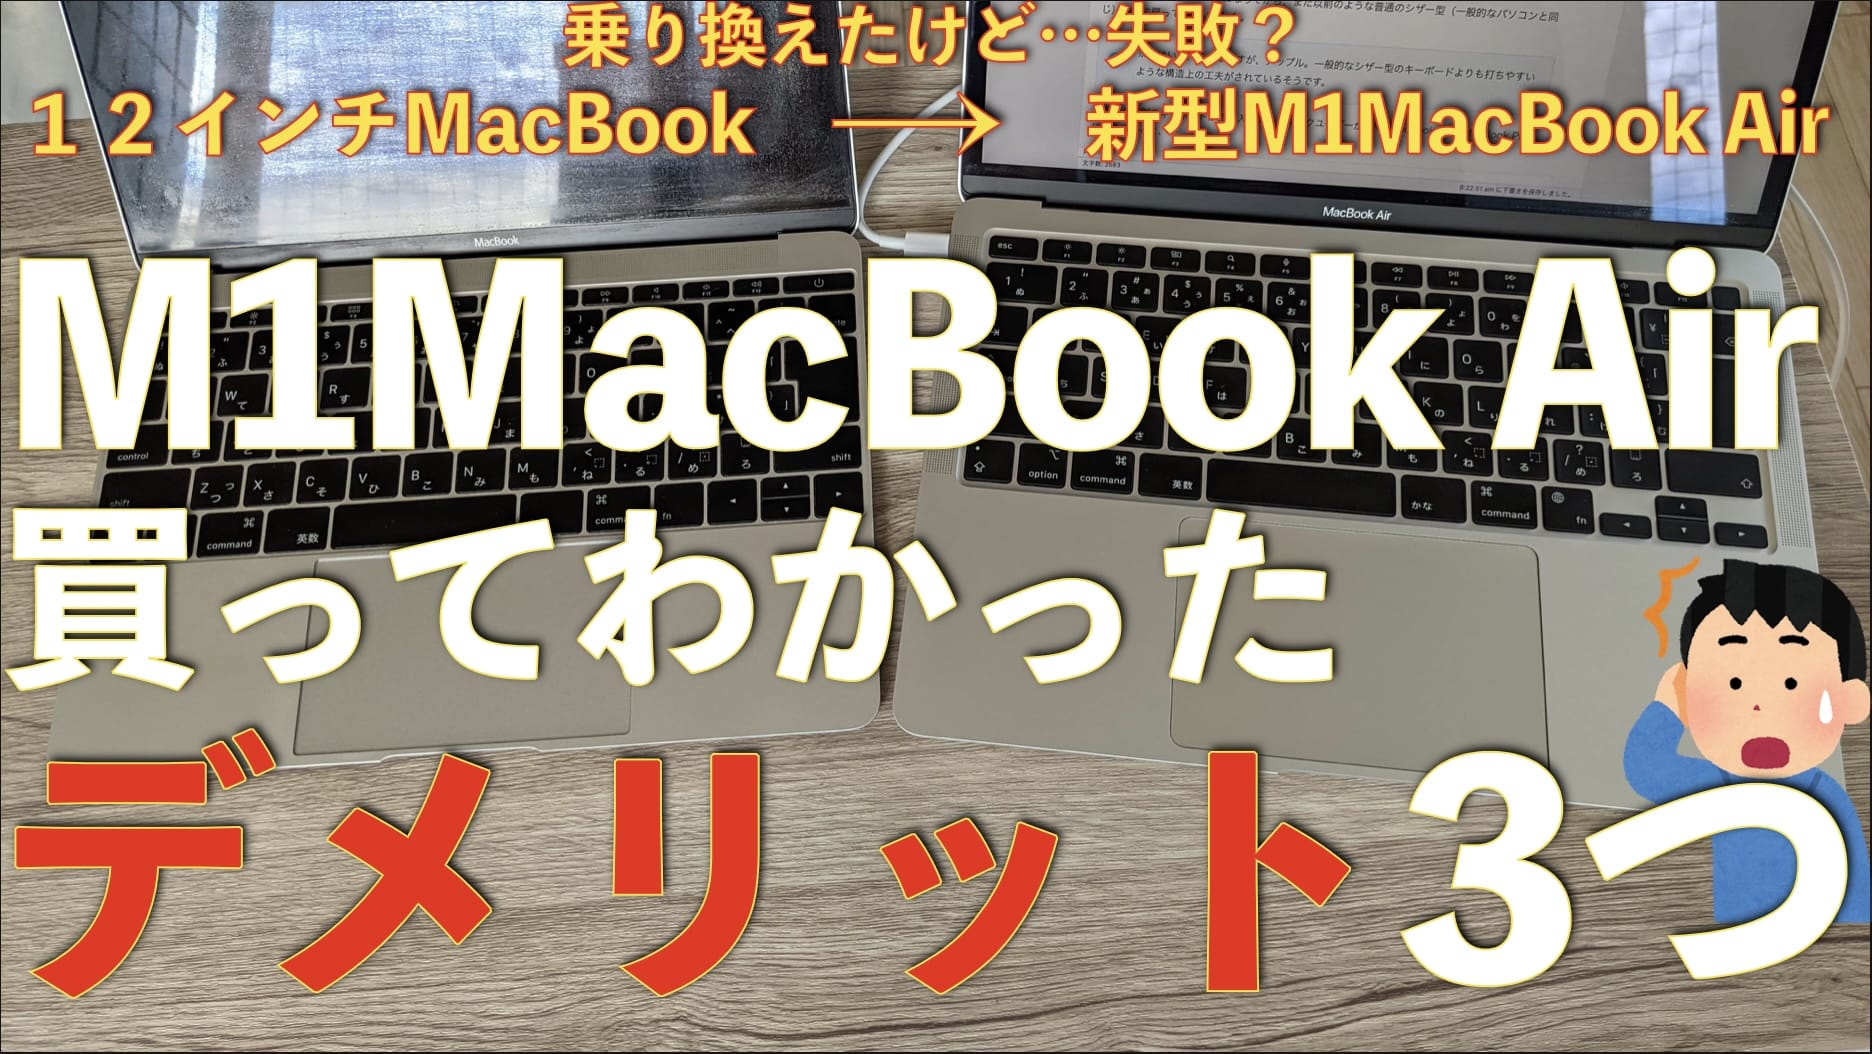 M1MacBook Airのここがダメ！3つの残念なポイント【買ってわかった】サムネイル画像